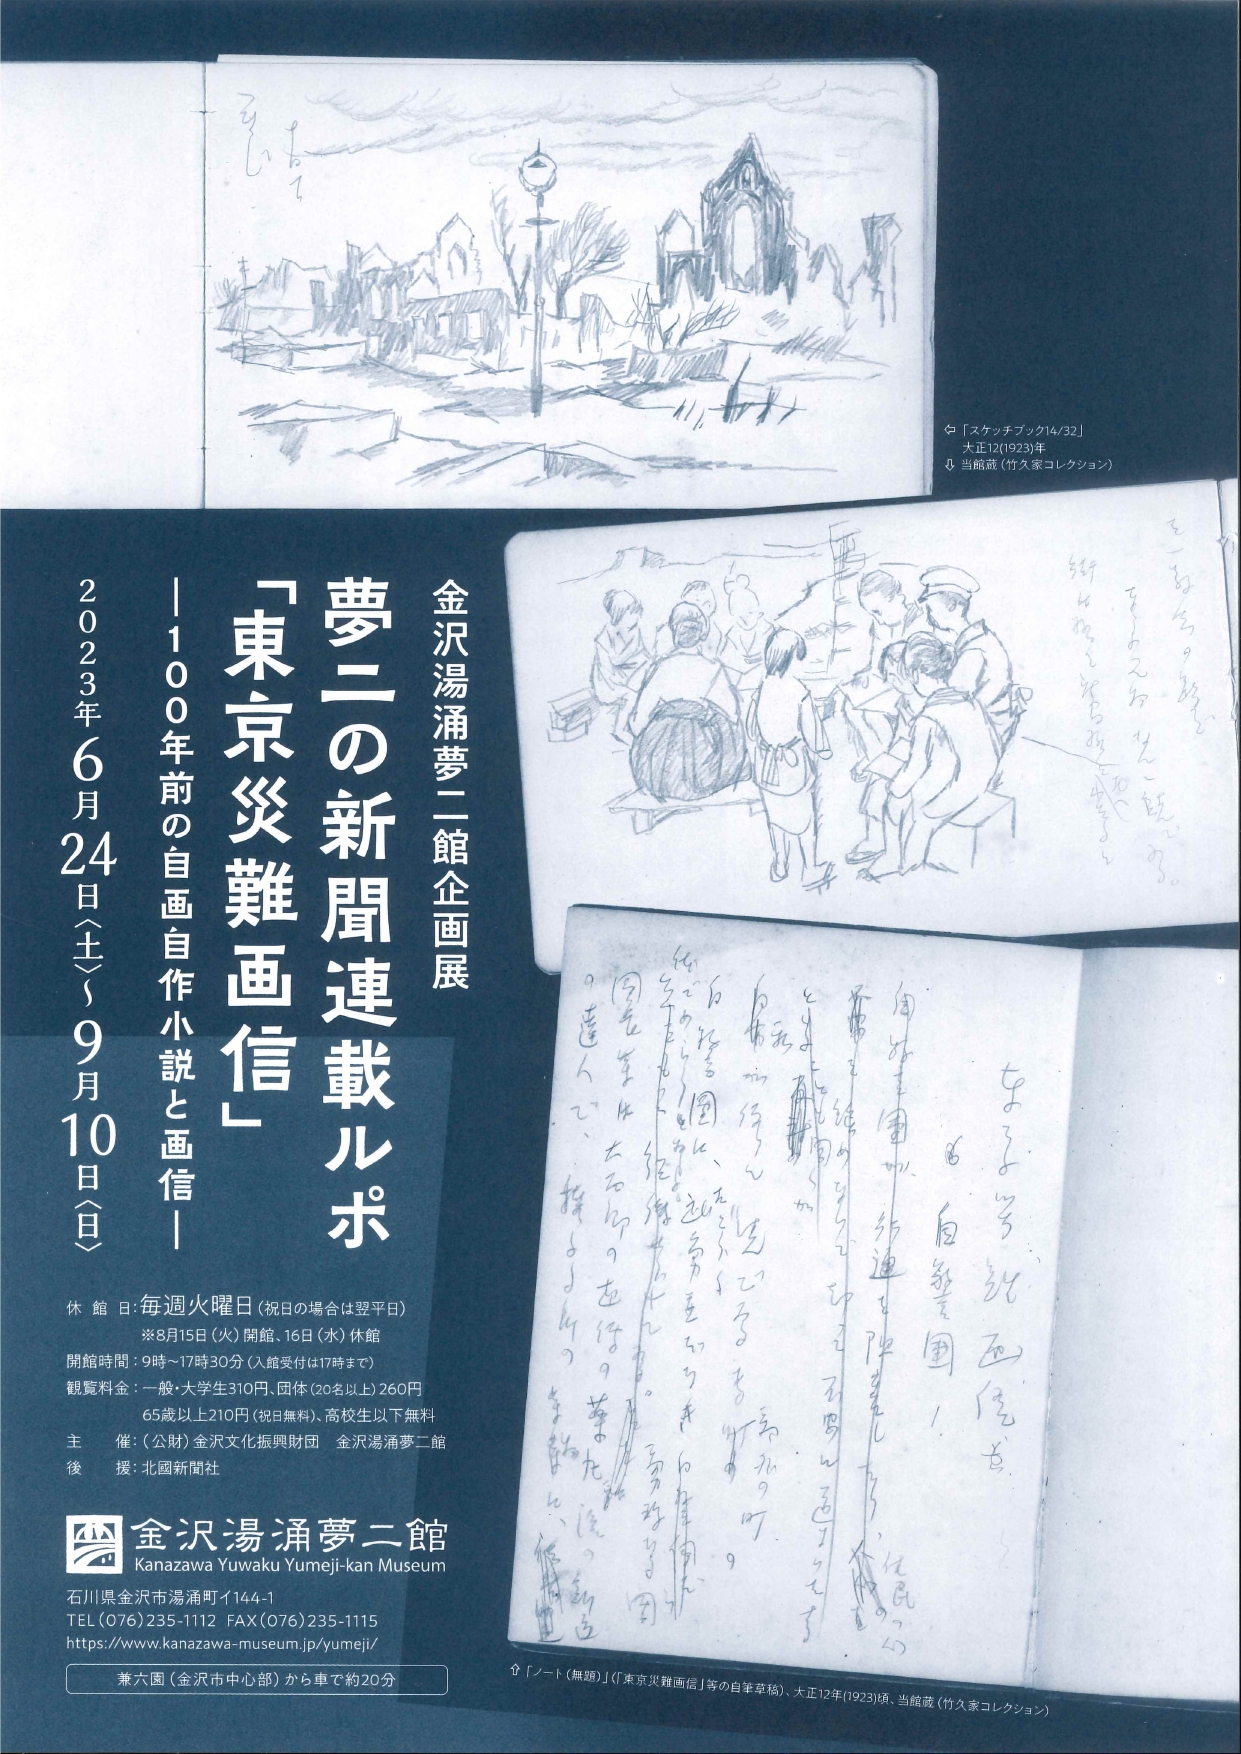 夢二の新聞連載ルポ『東京災難画信』 - 100年前の自画自作小説と画信